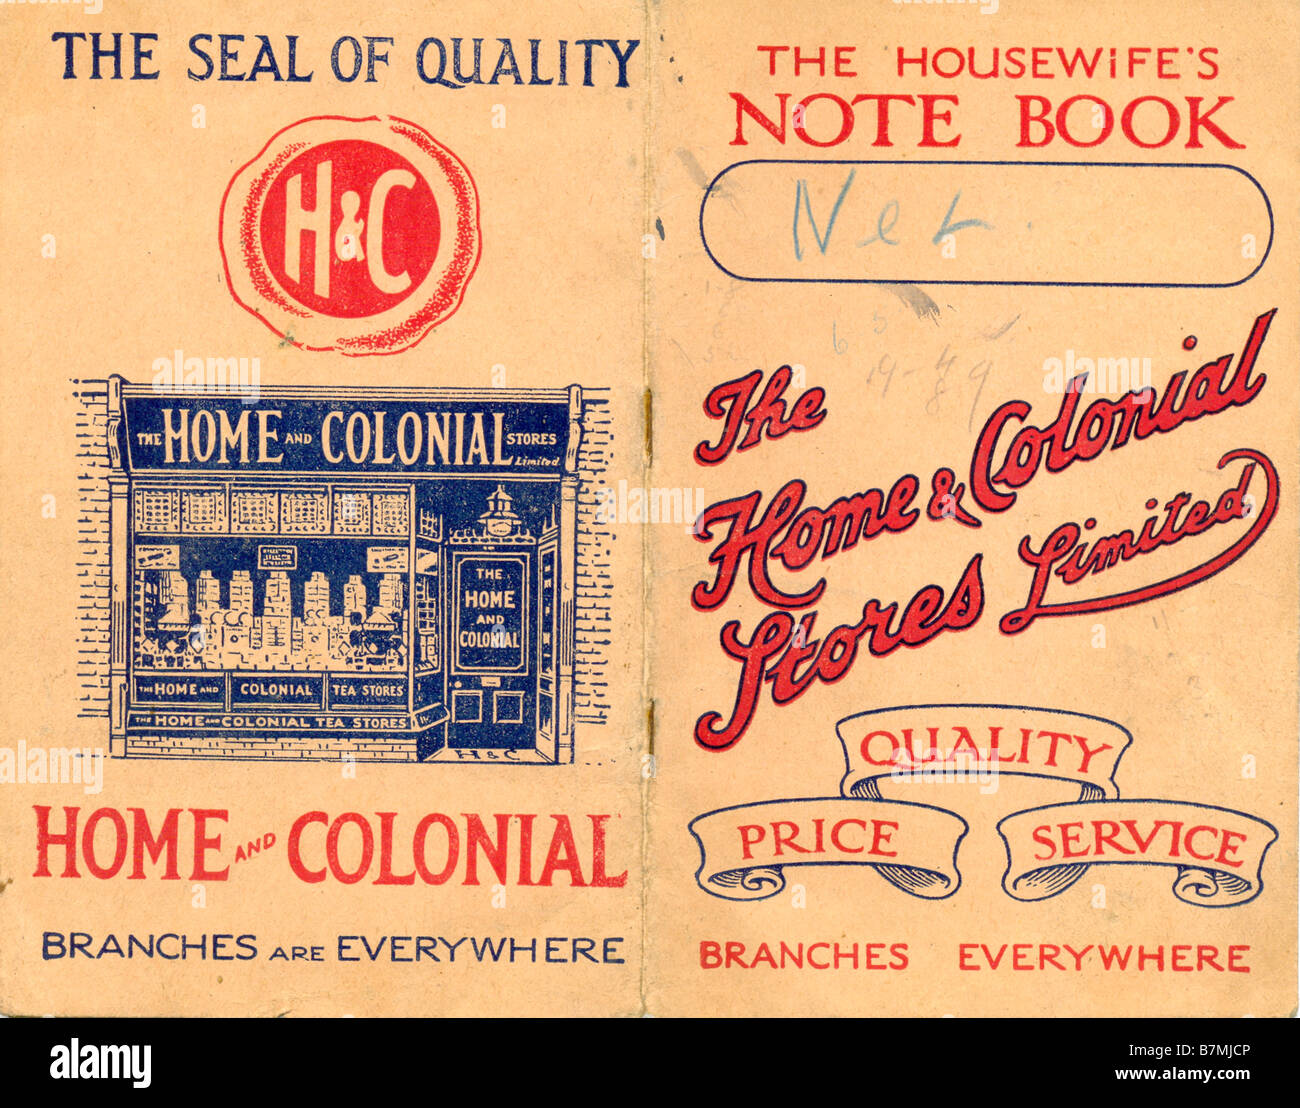 Der Hausfrau Note Book von The Home & Colonial Stores gebräuchlich Januar 1926 produziert Stockfoto